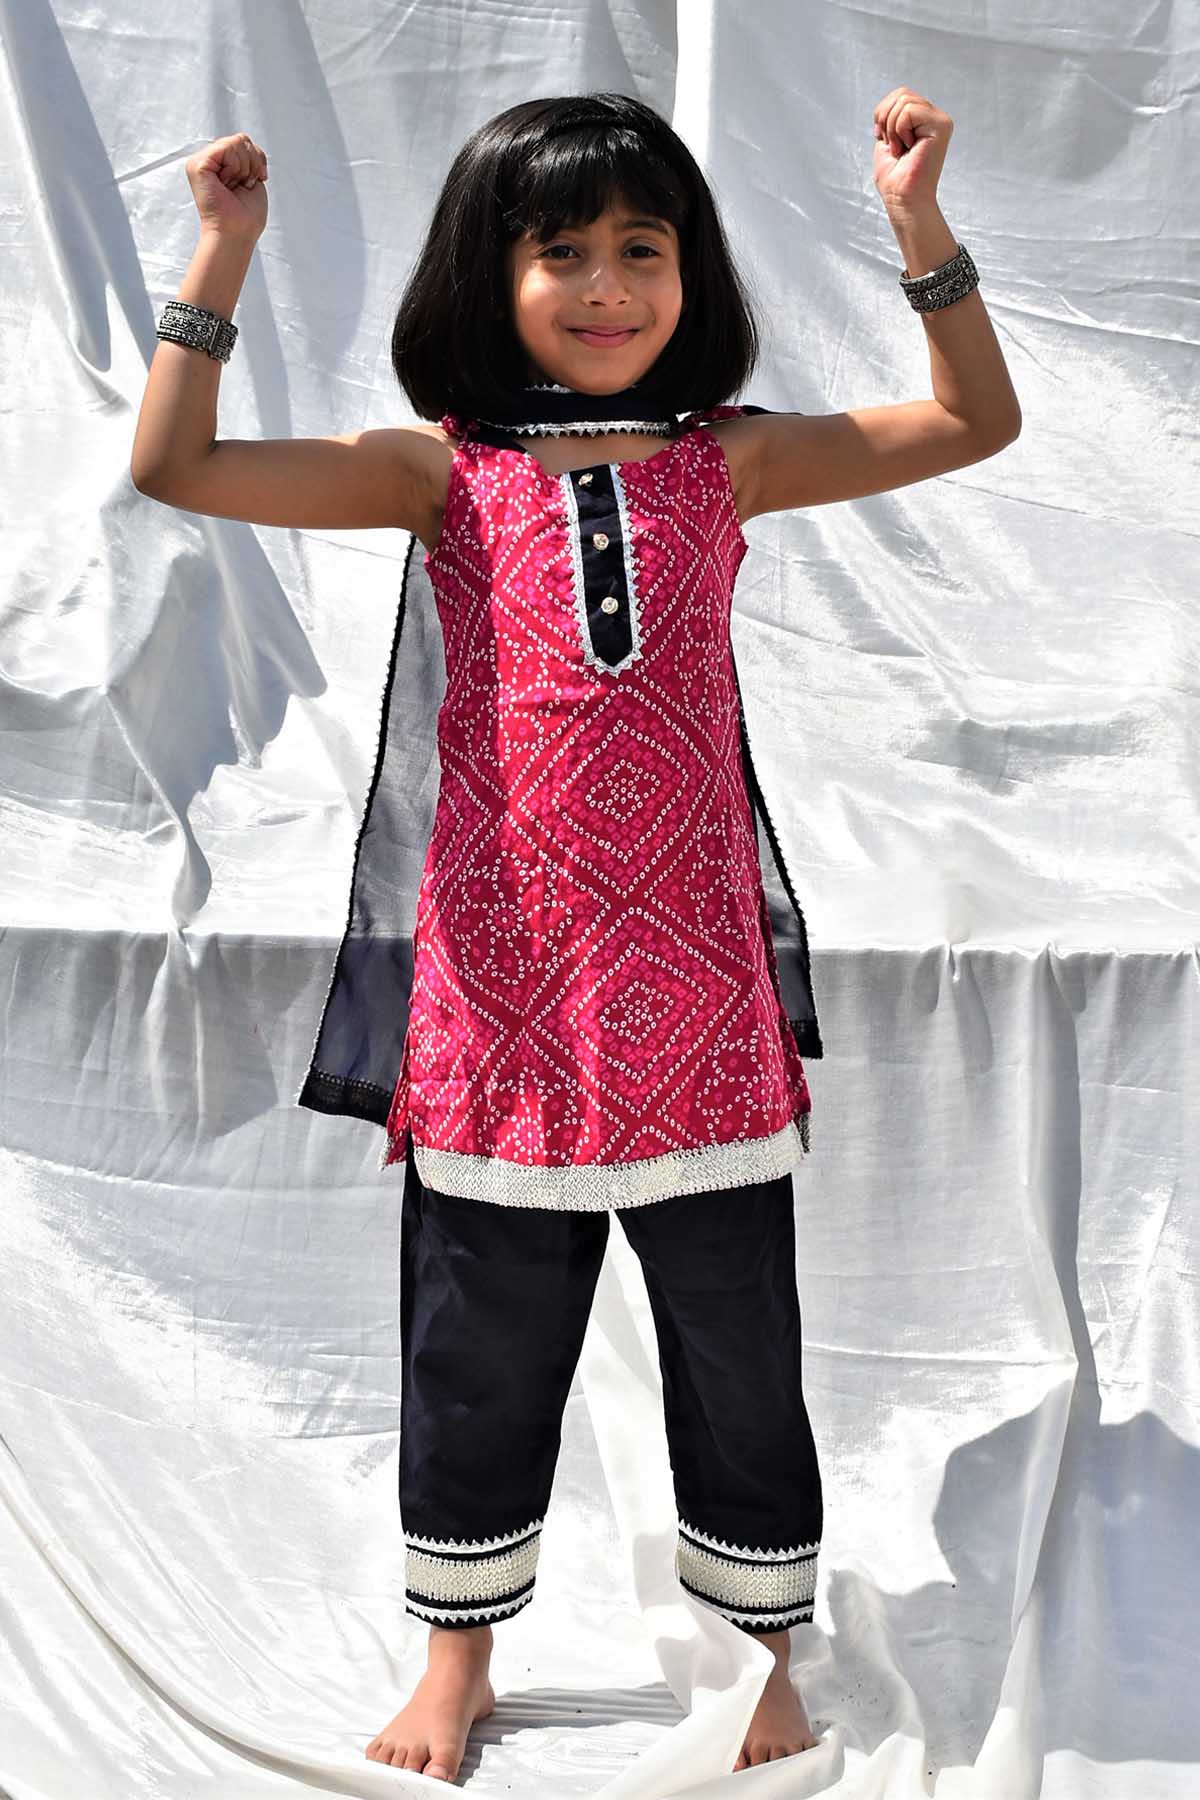 Designer ViYa Pink Bandhani Kurta & Pyjama Set For Kids Available online at ScrollnShops